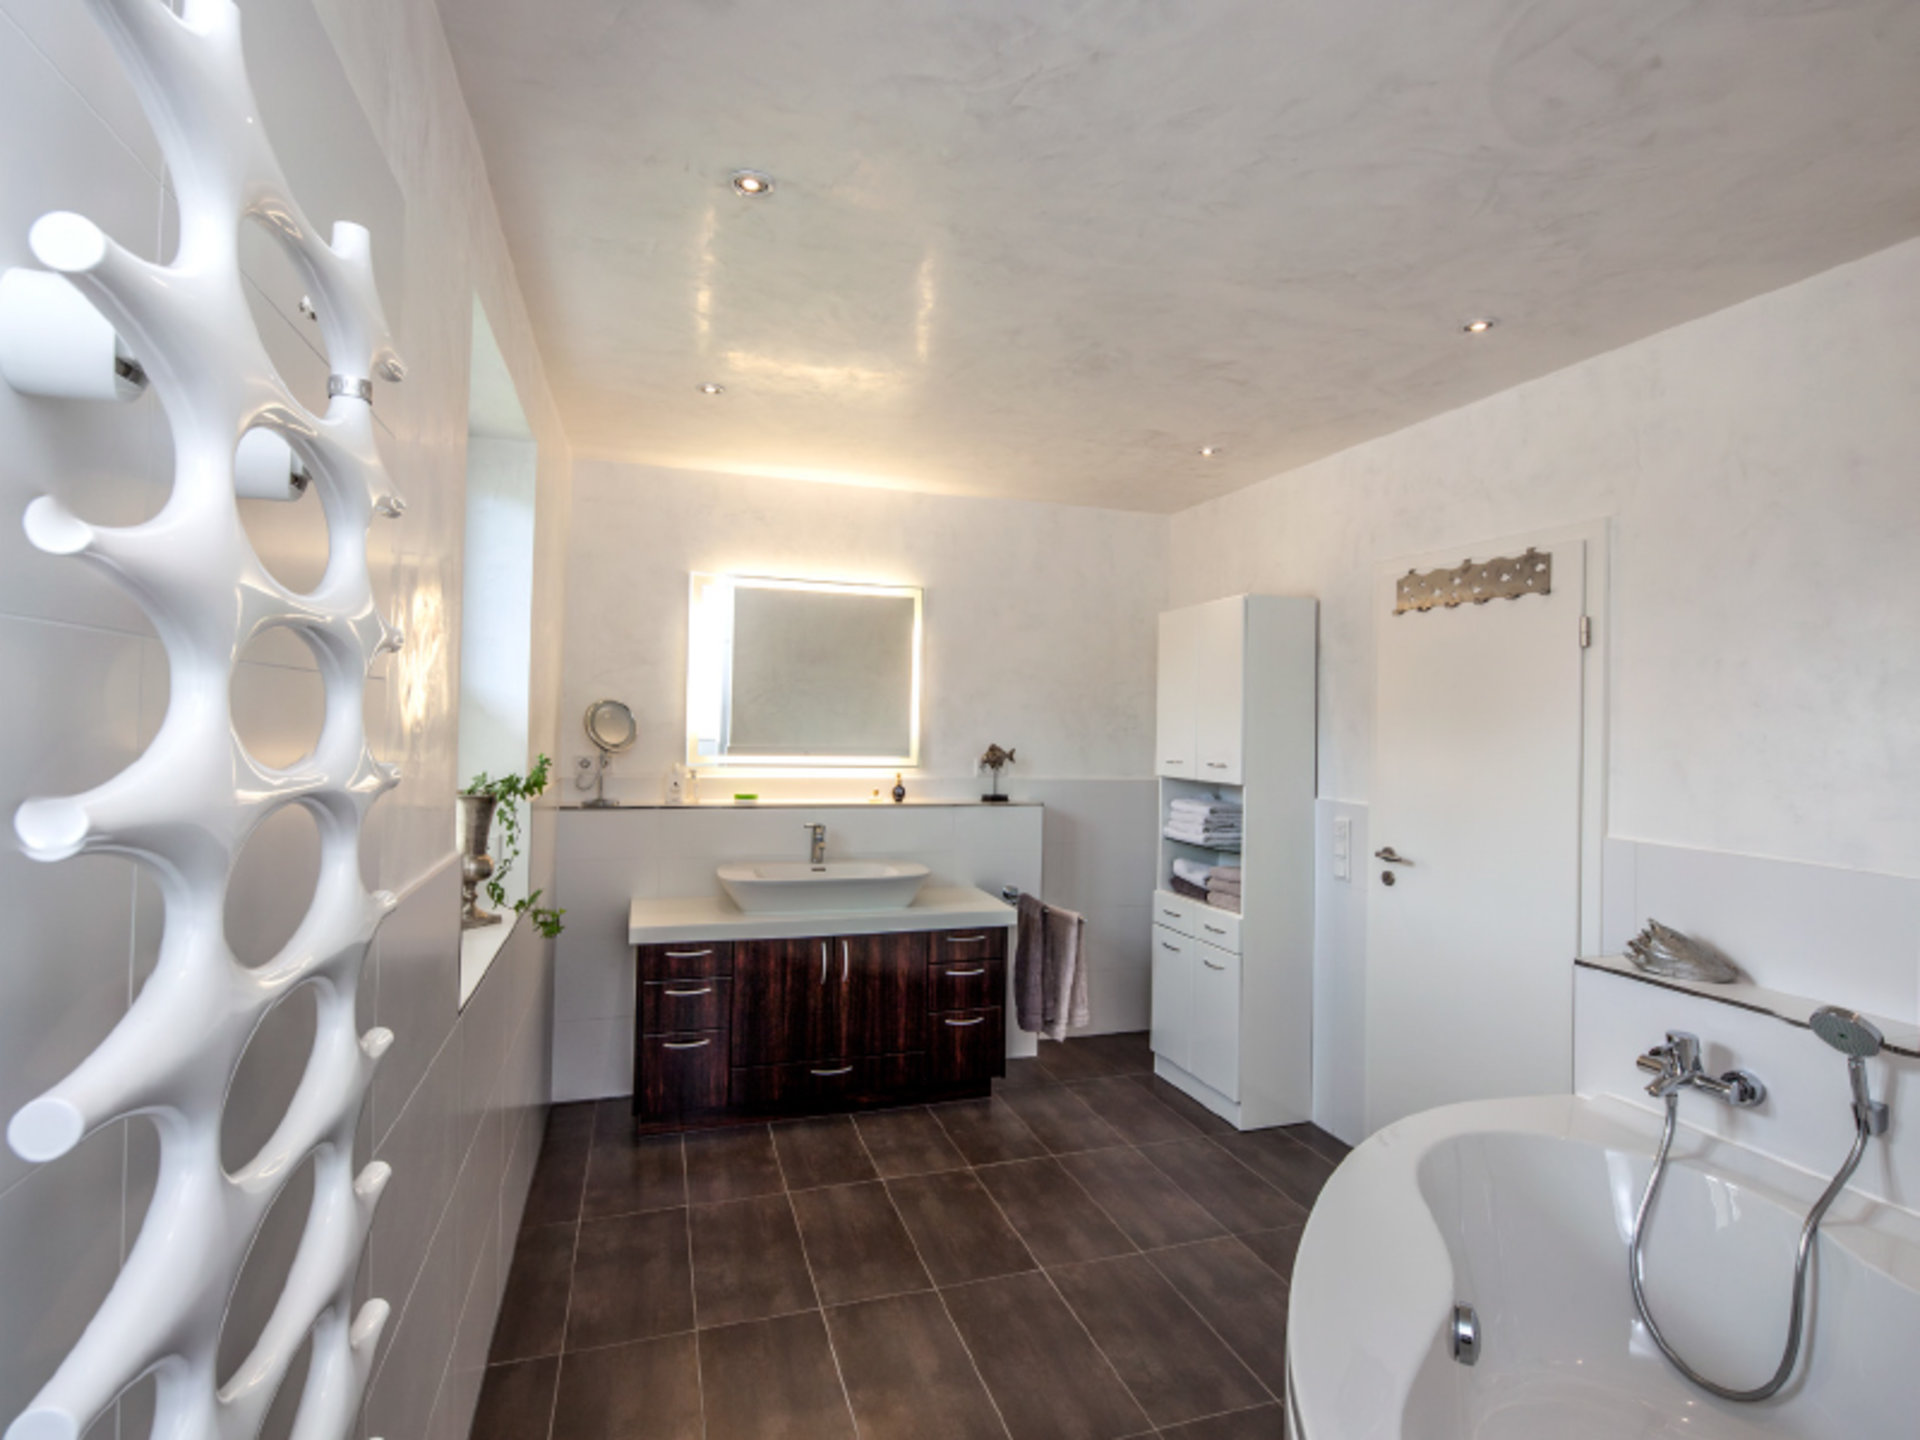 Individualität im Badezimmer – Haus Pohl beeindruckt durch außergeöhnliche Formen (Foto: BAUMEISTER-HAUS)